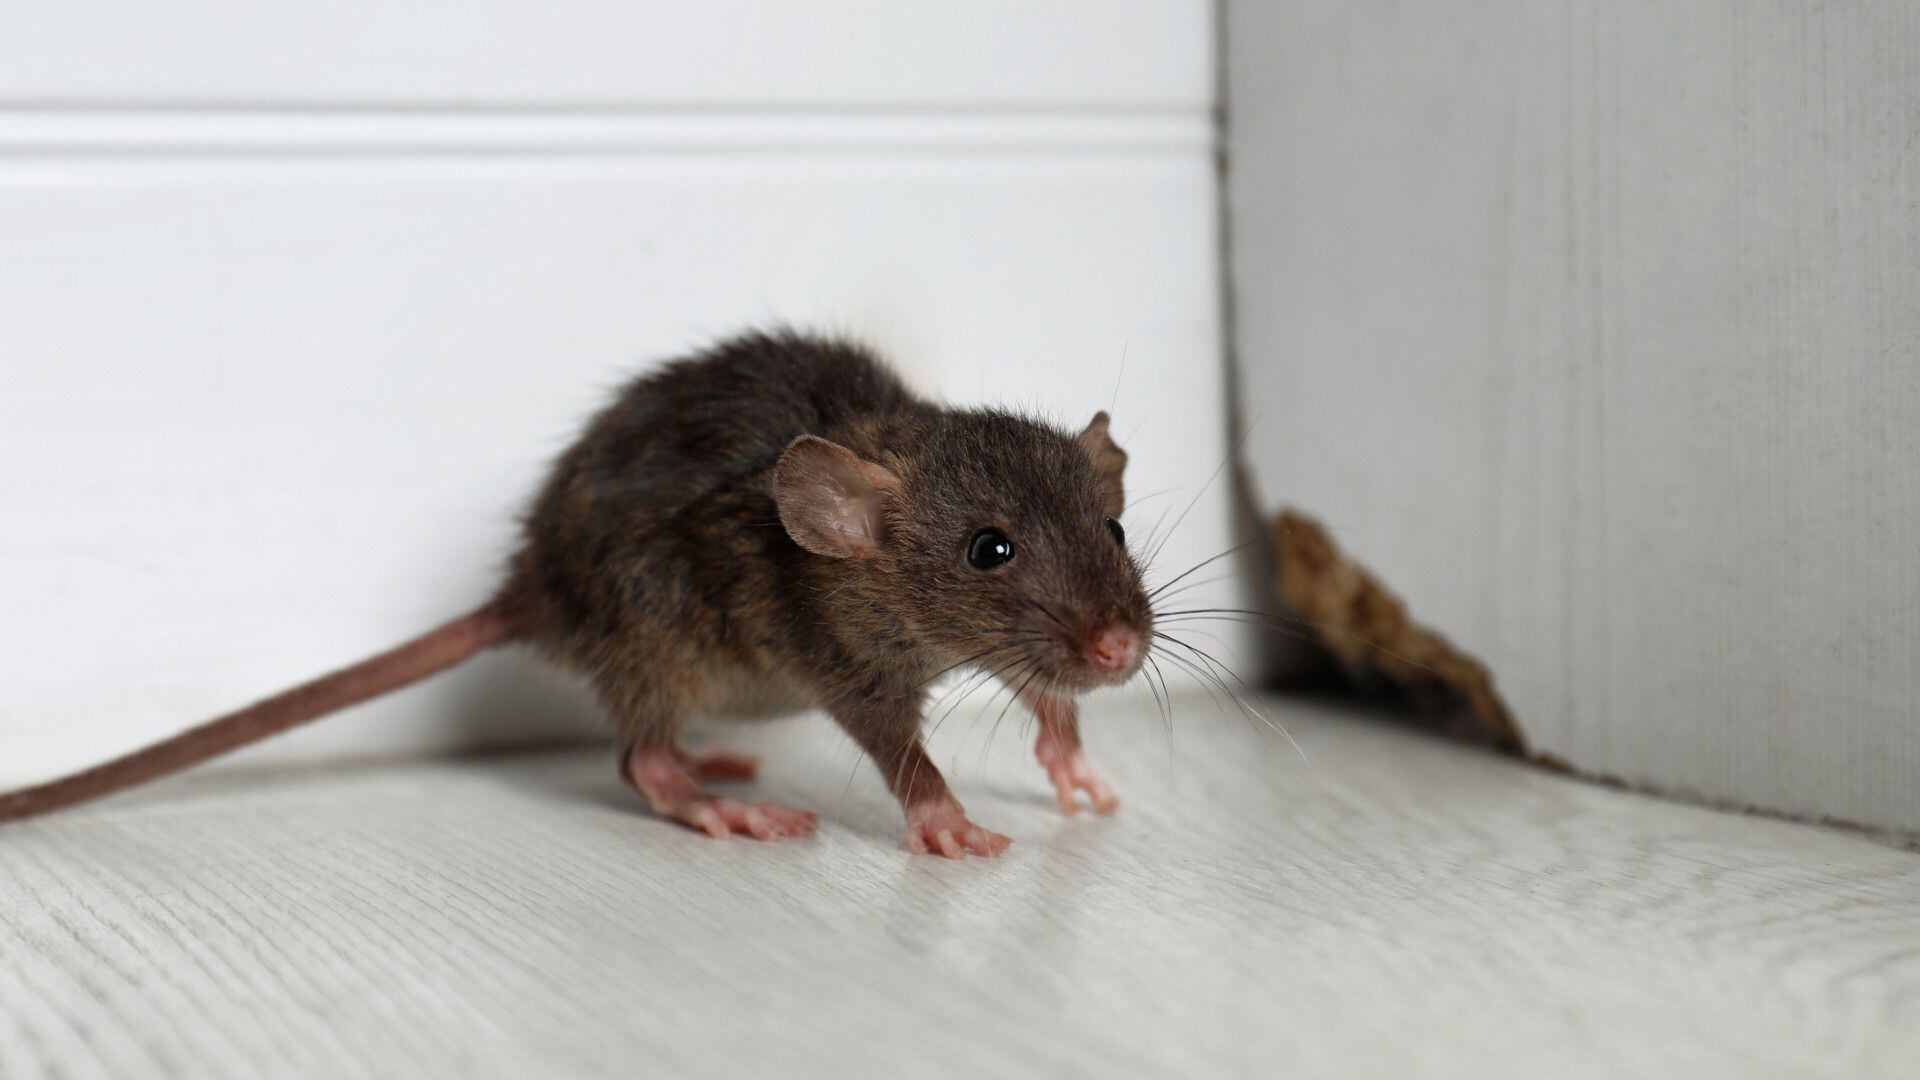 Son efectivos los ultrasonidos para ratas y ratones? - Anticimex